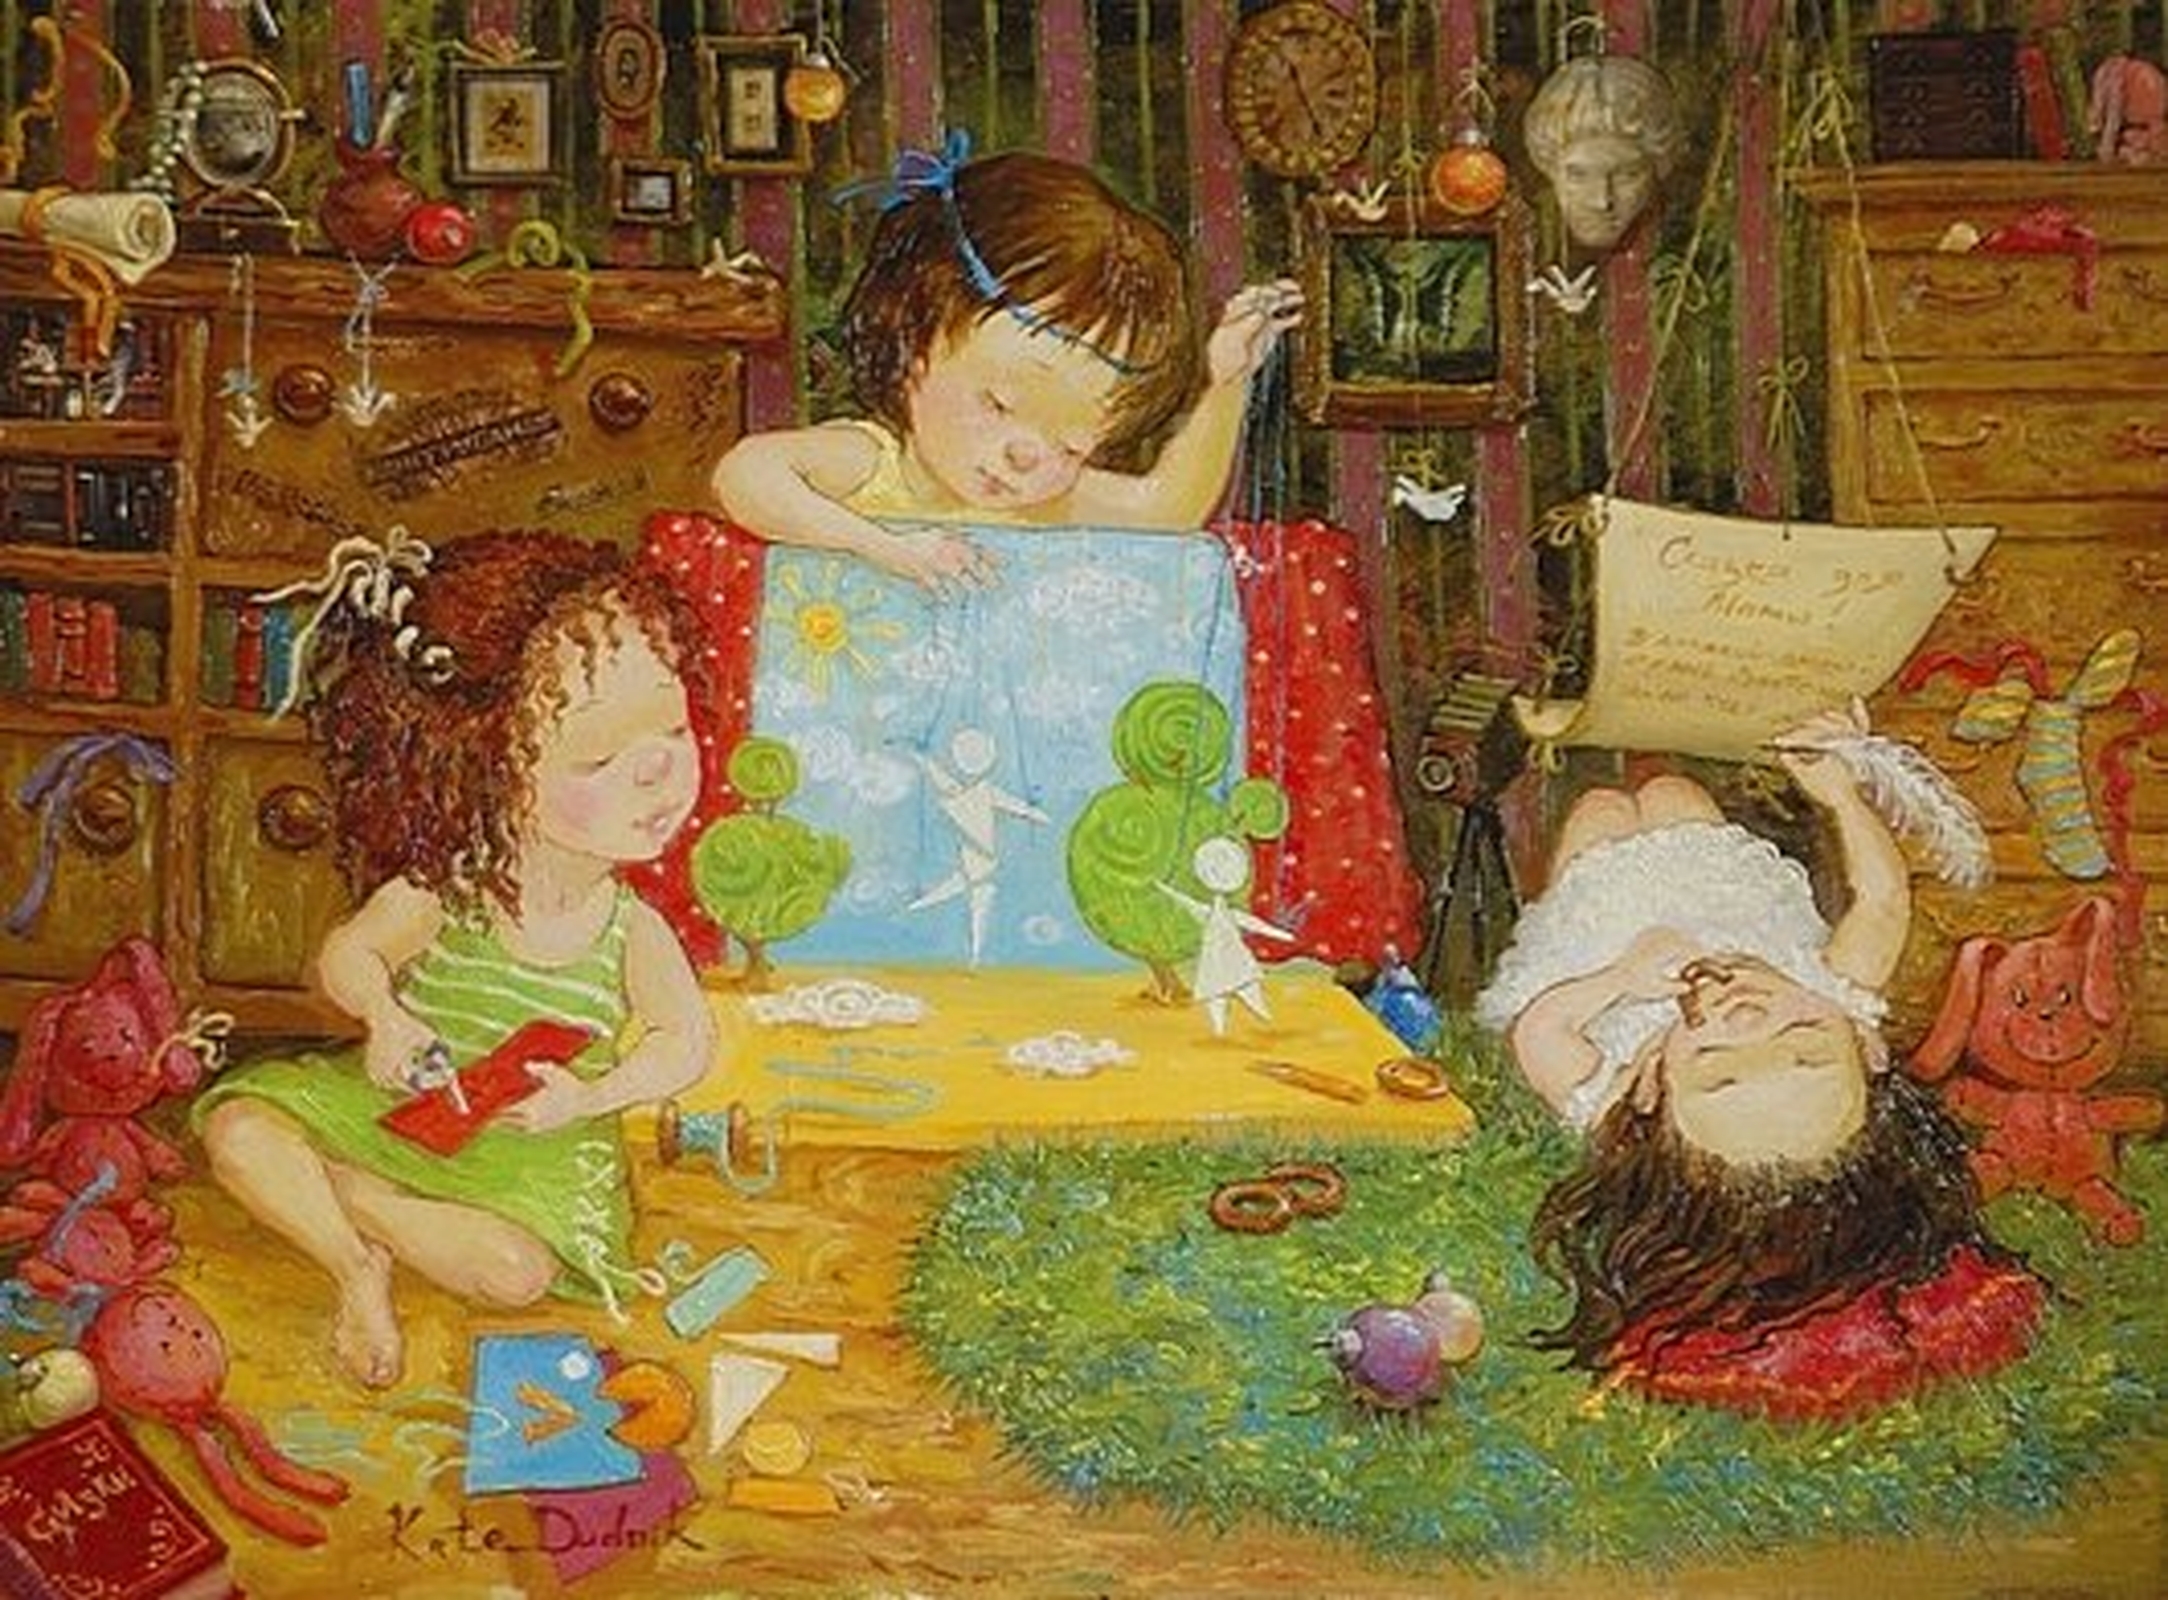 Сказки для детей 7 8 девочек читать. Картины художницы Екатерины Дудник.